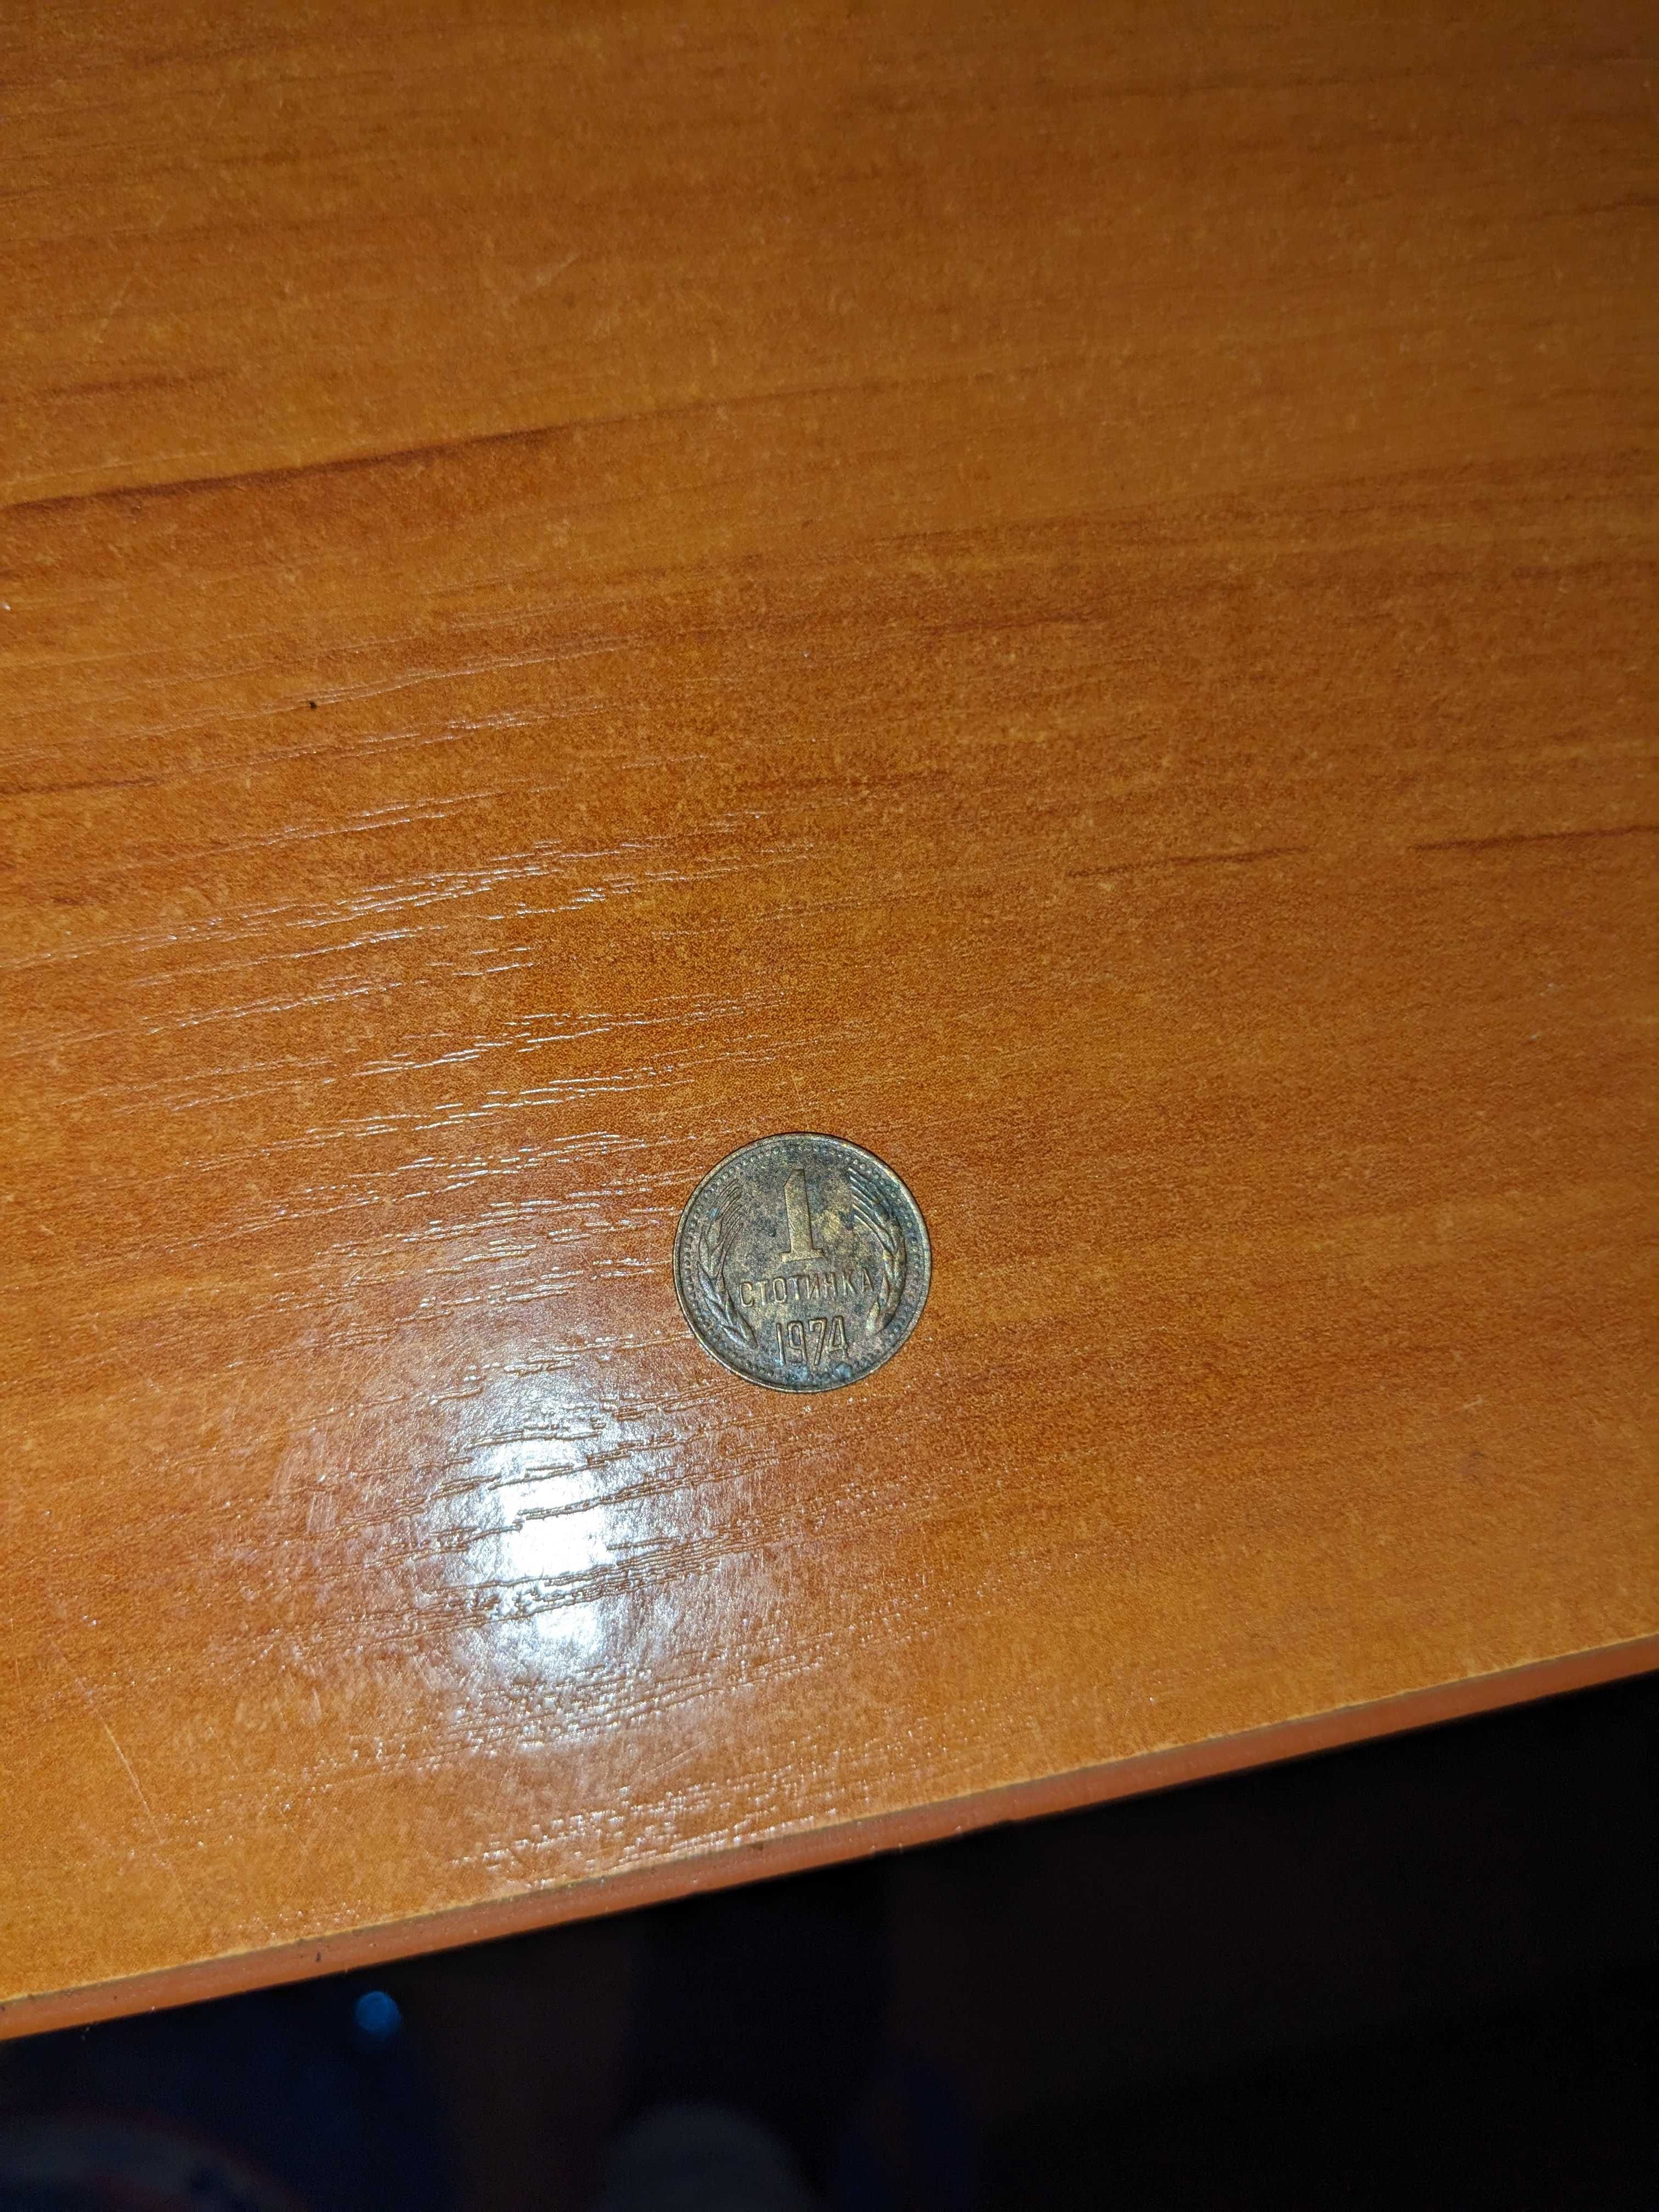 1 стотинка от 1974